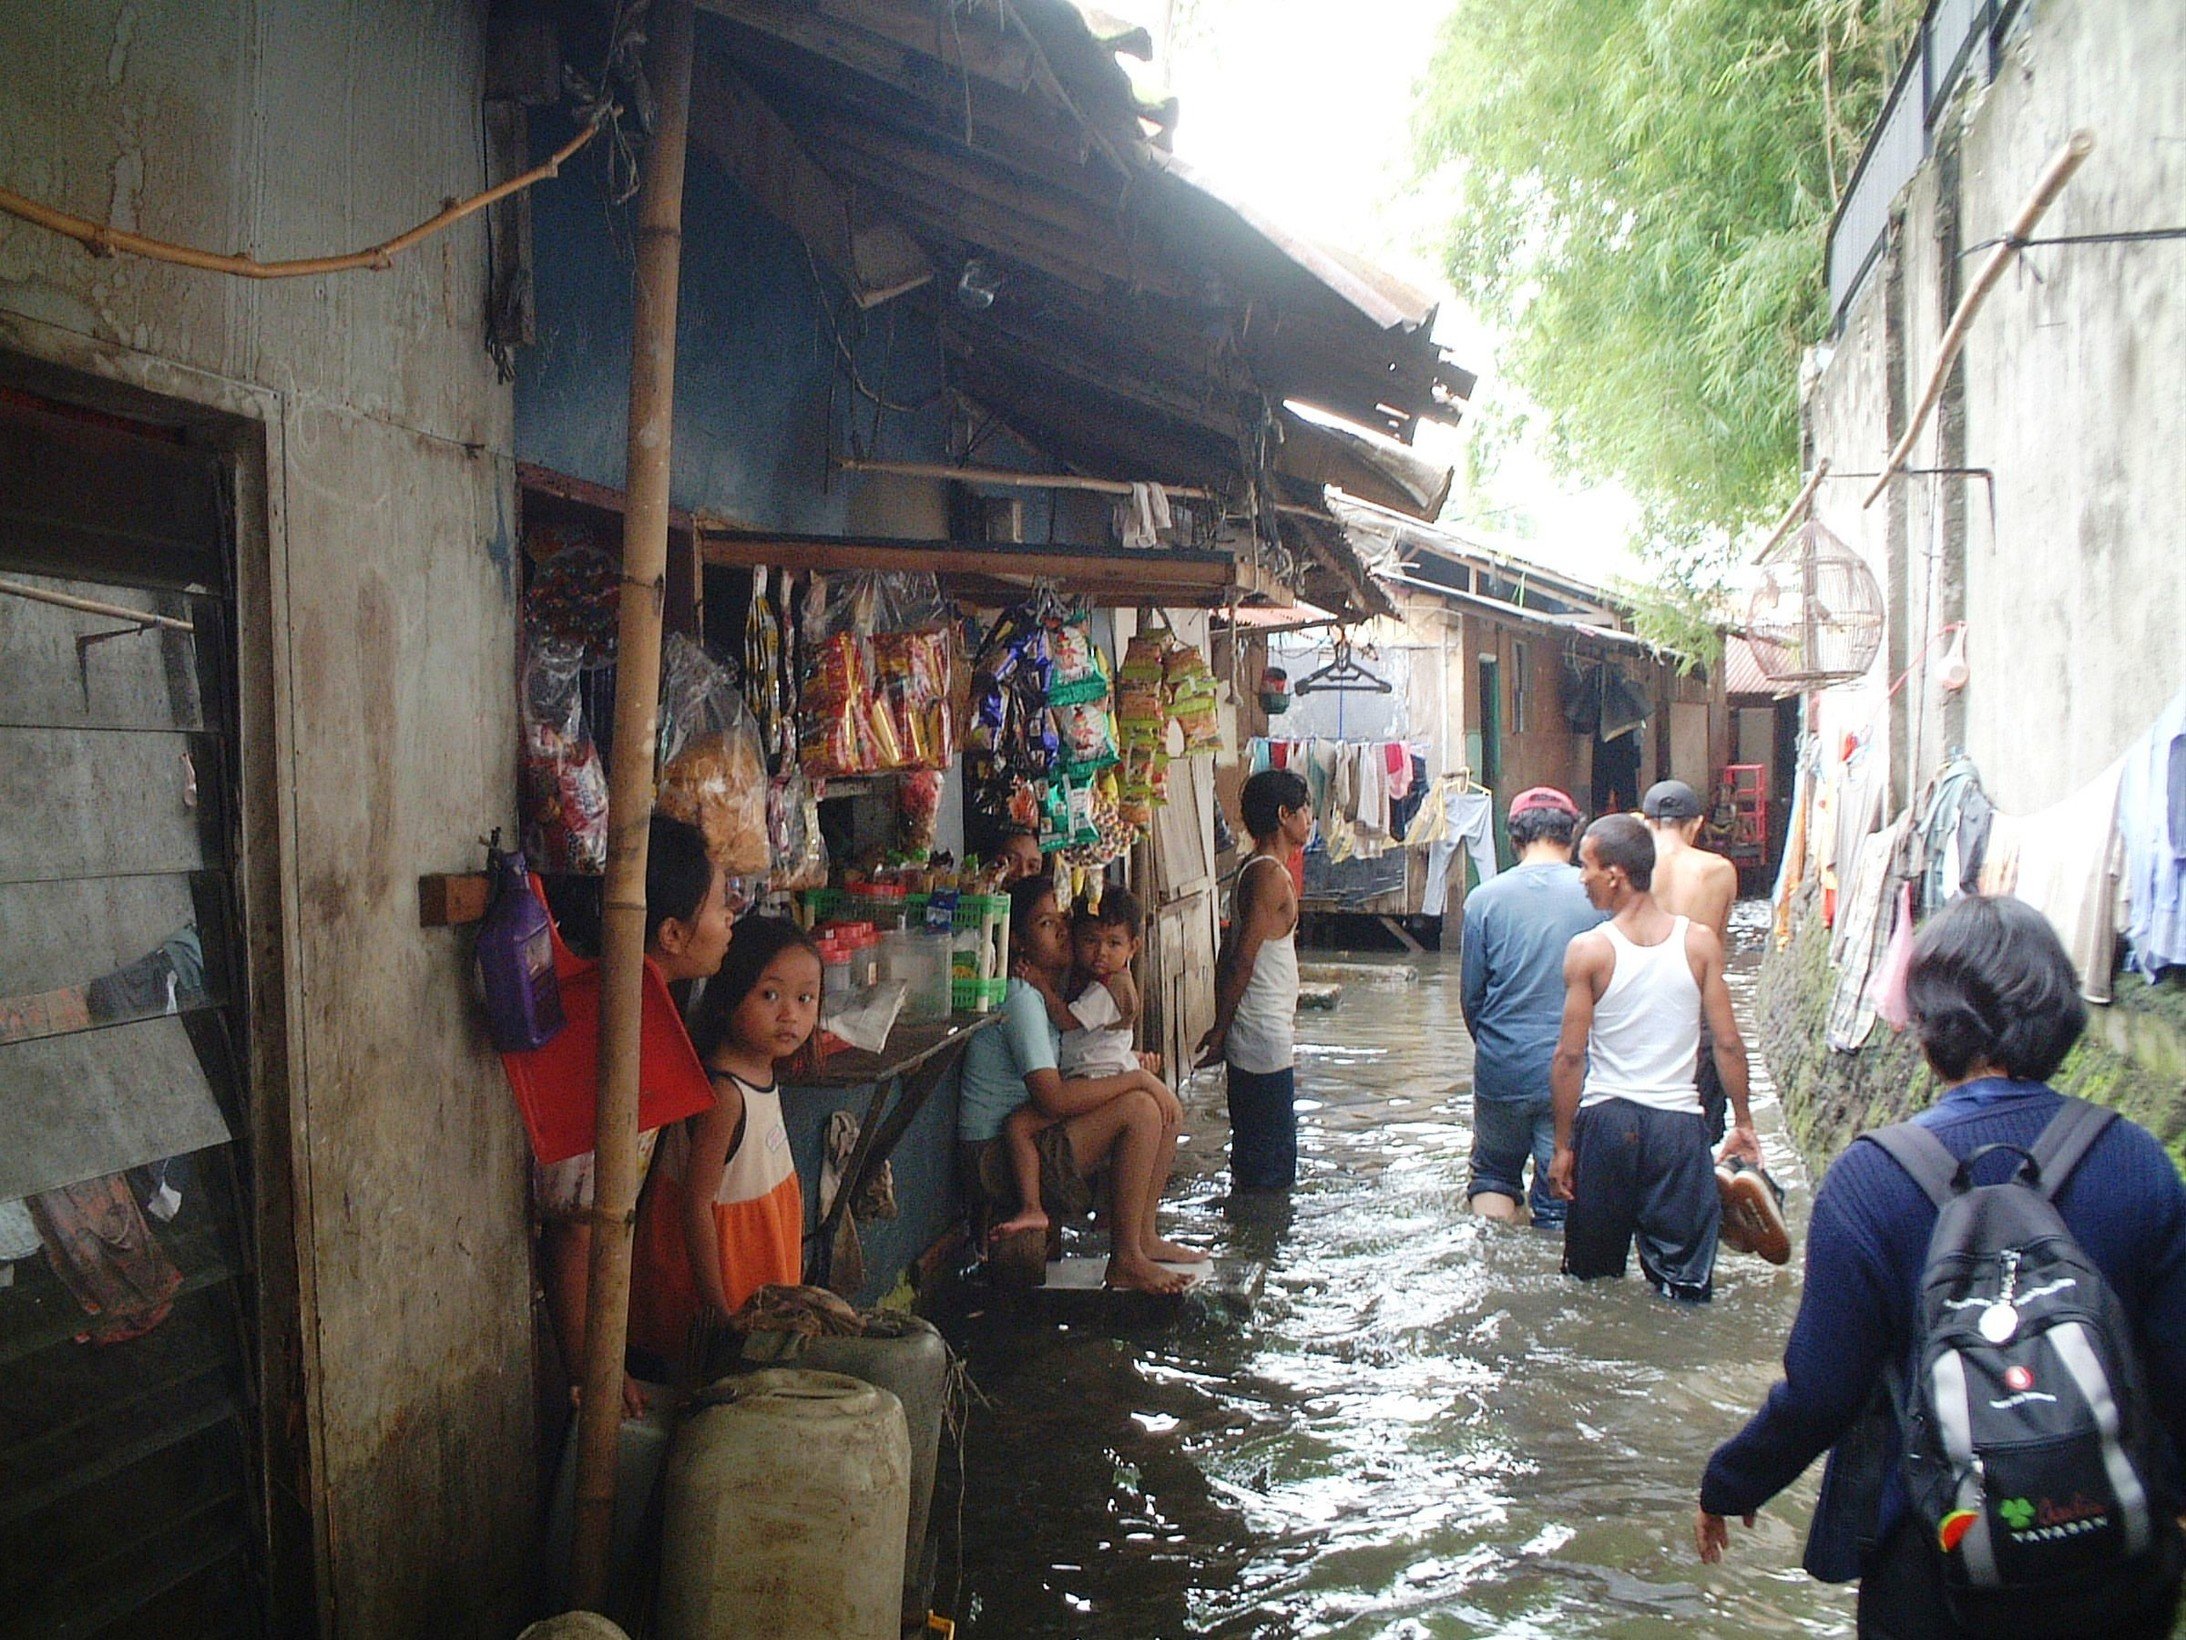 Überschwemmung in Jakarta